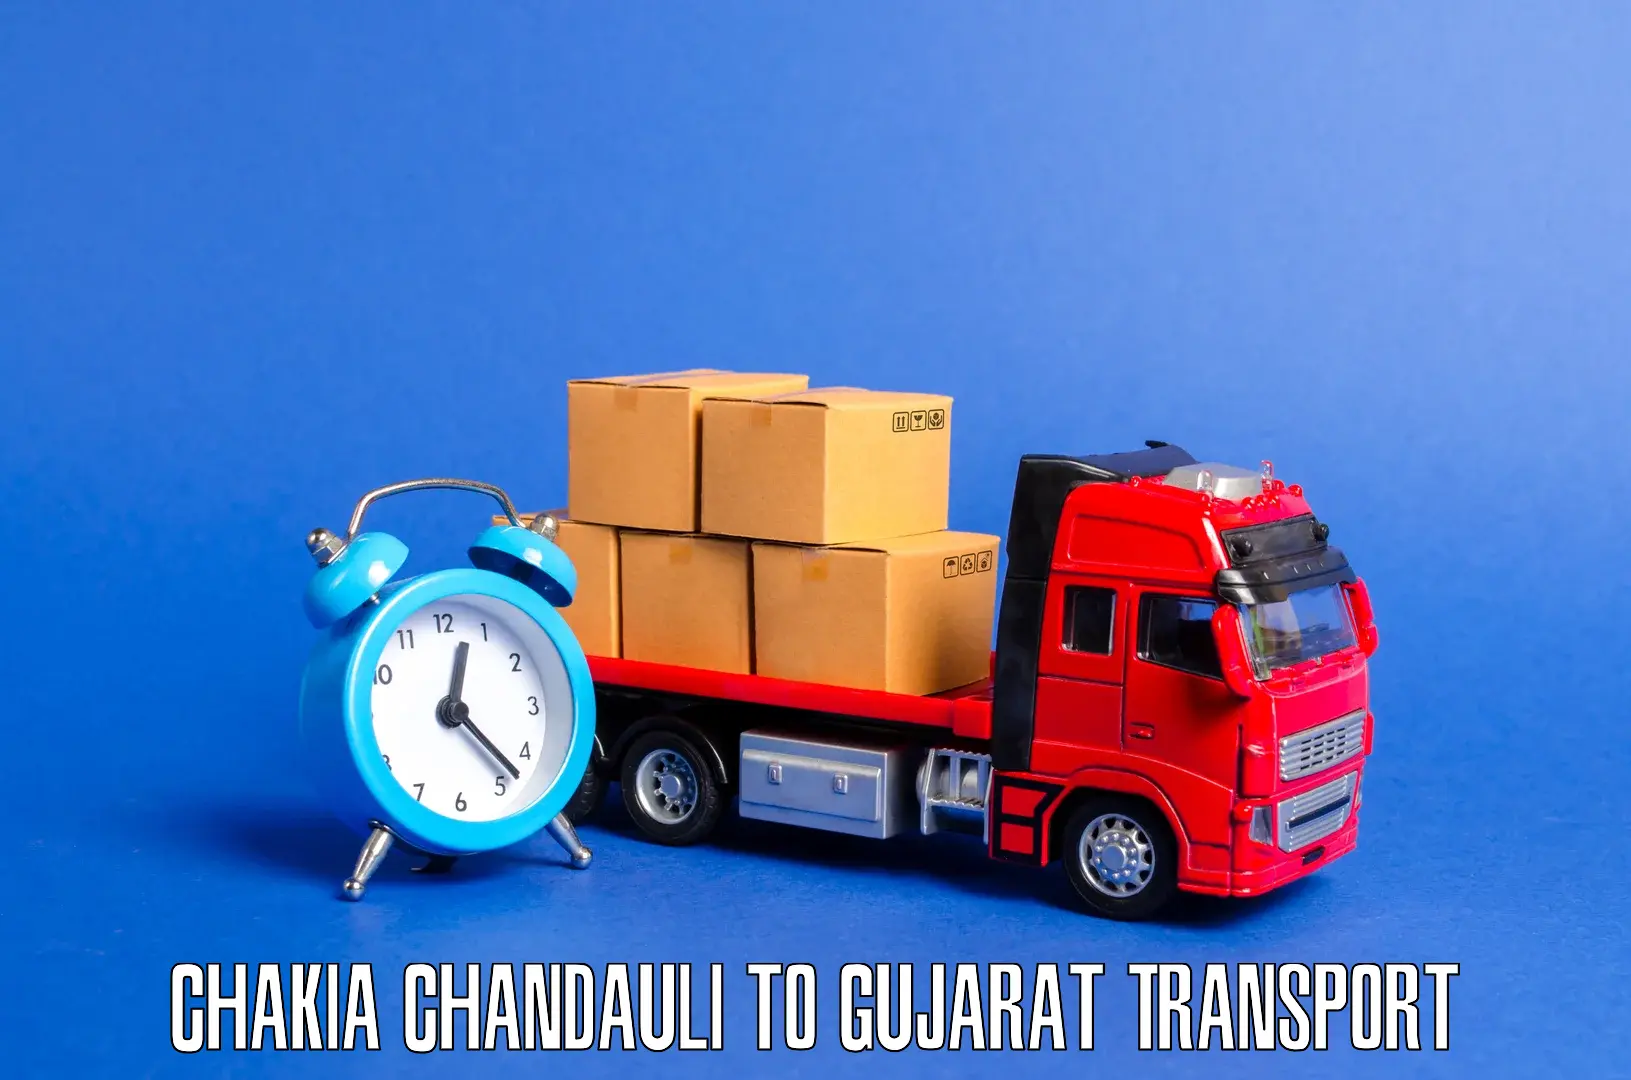 Nationwide transport services Chakia Chandauli to NIT Surat